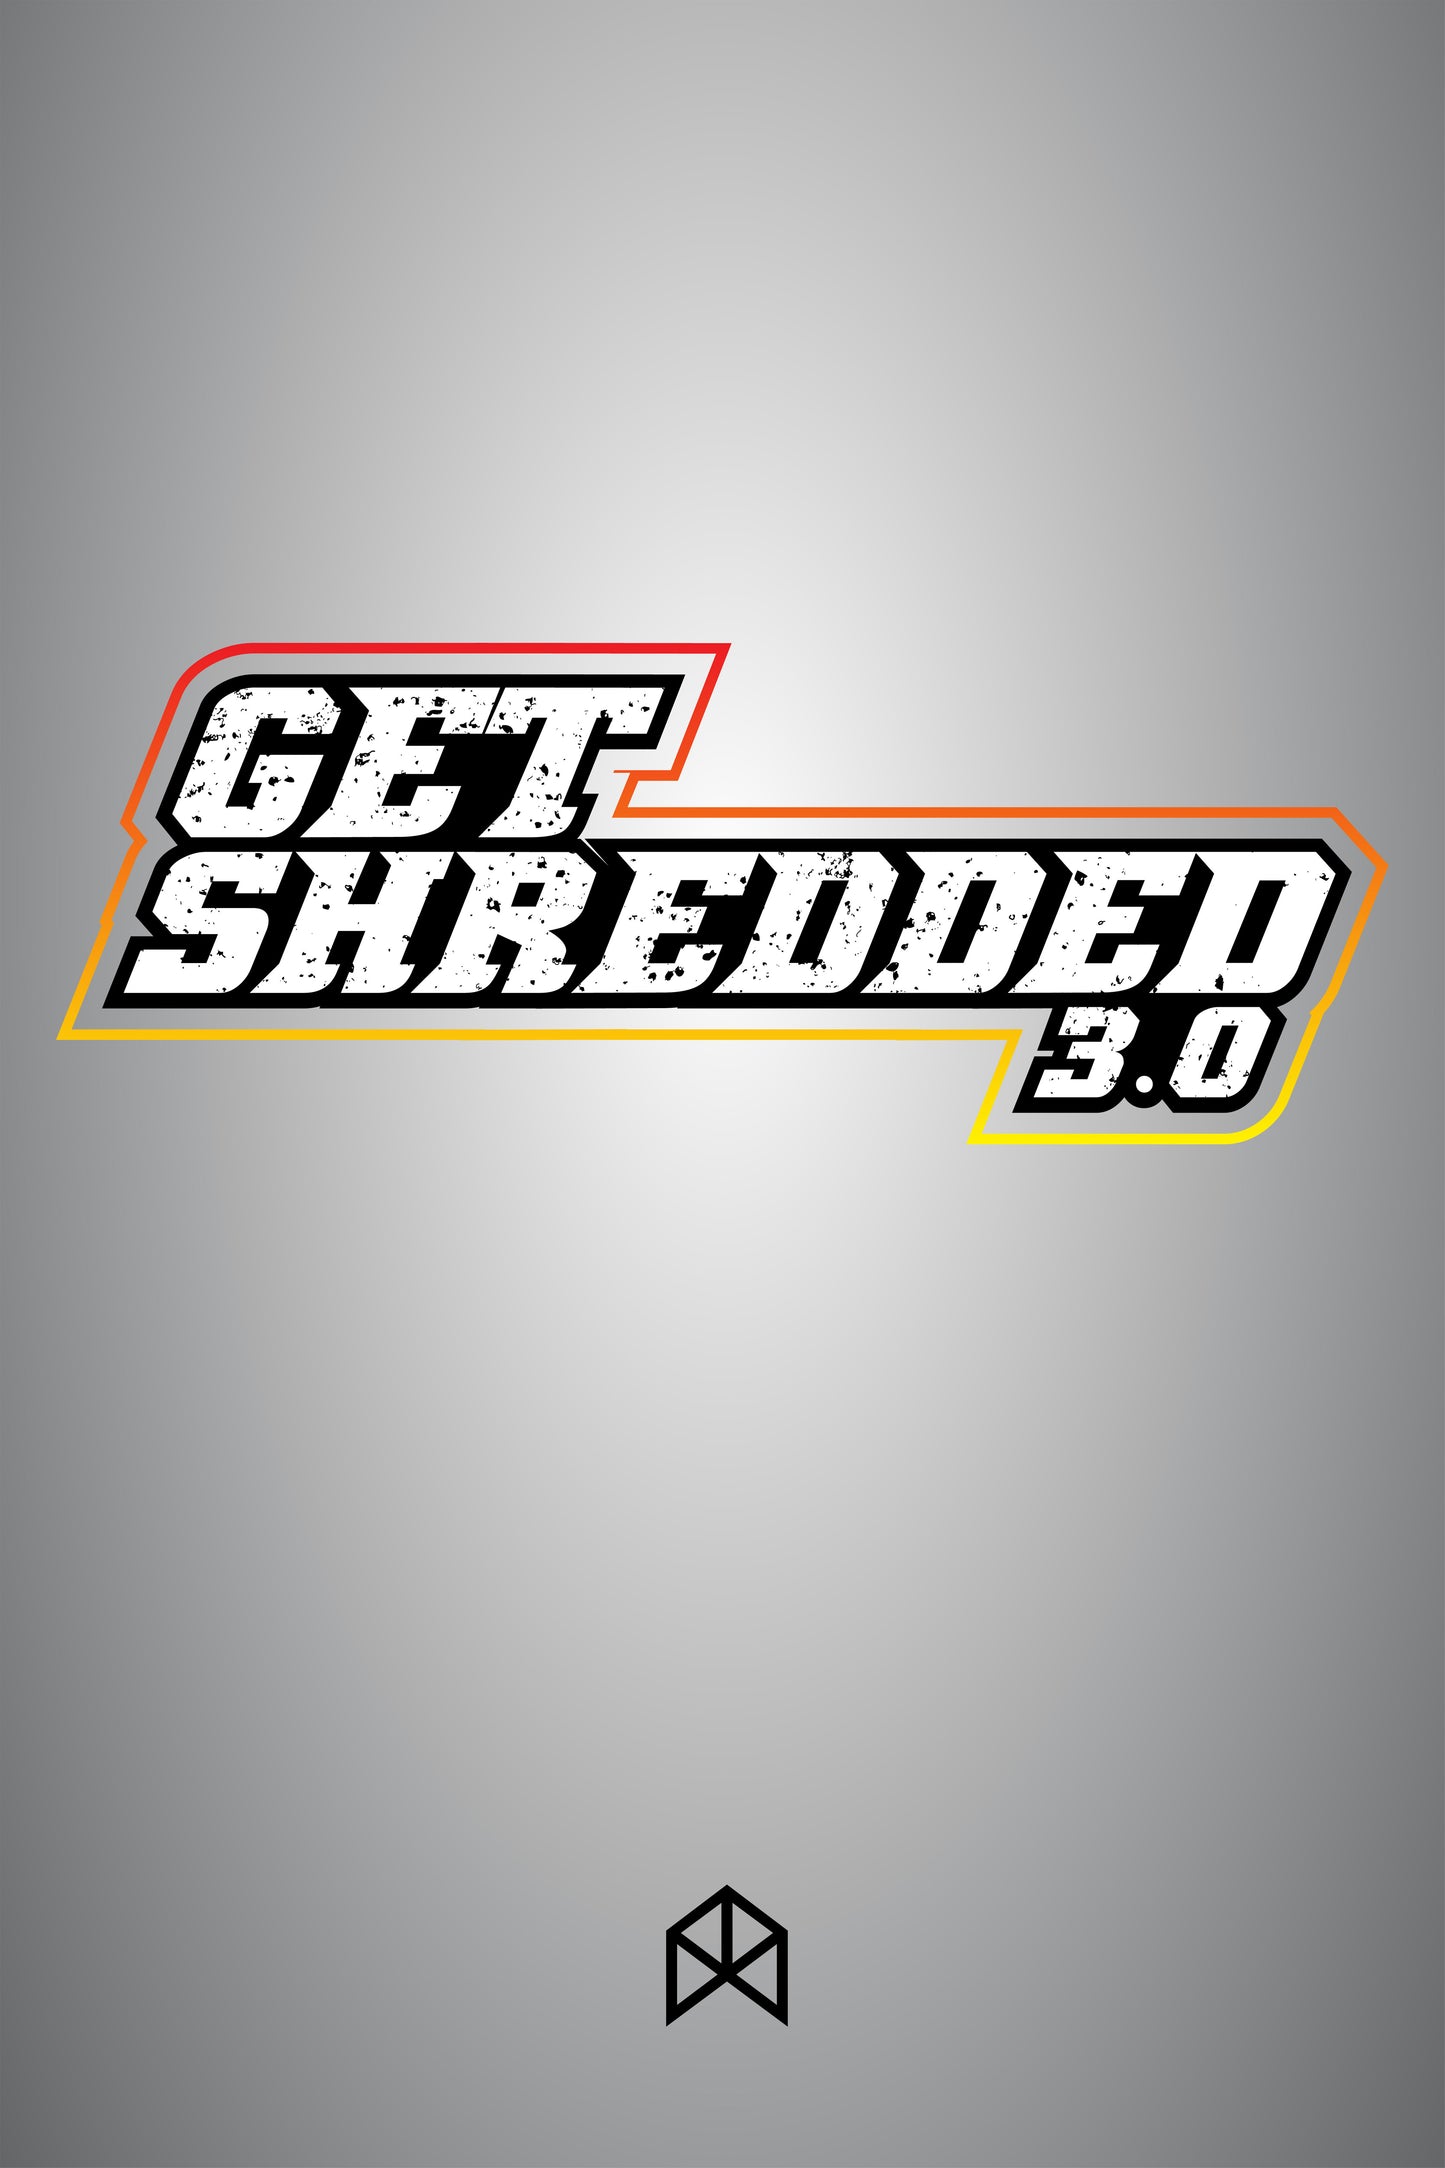 GET SHREDDED 3.0